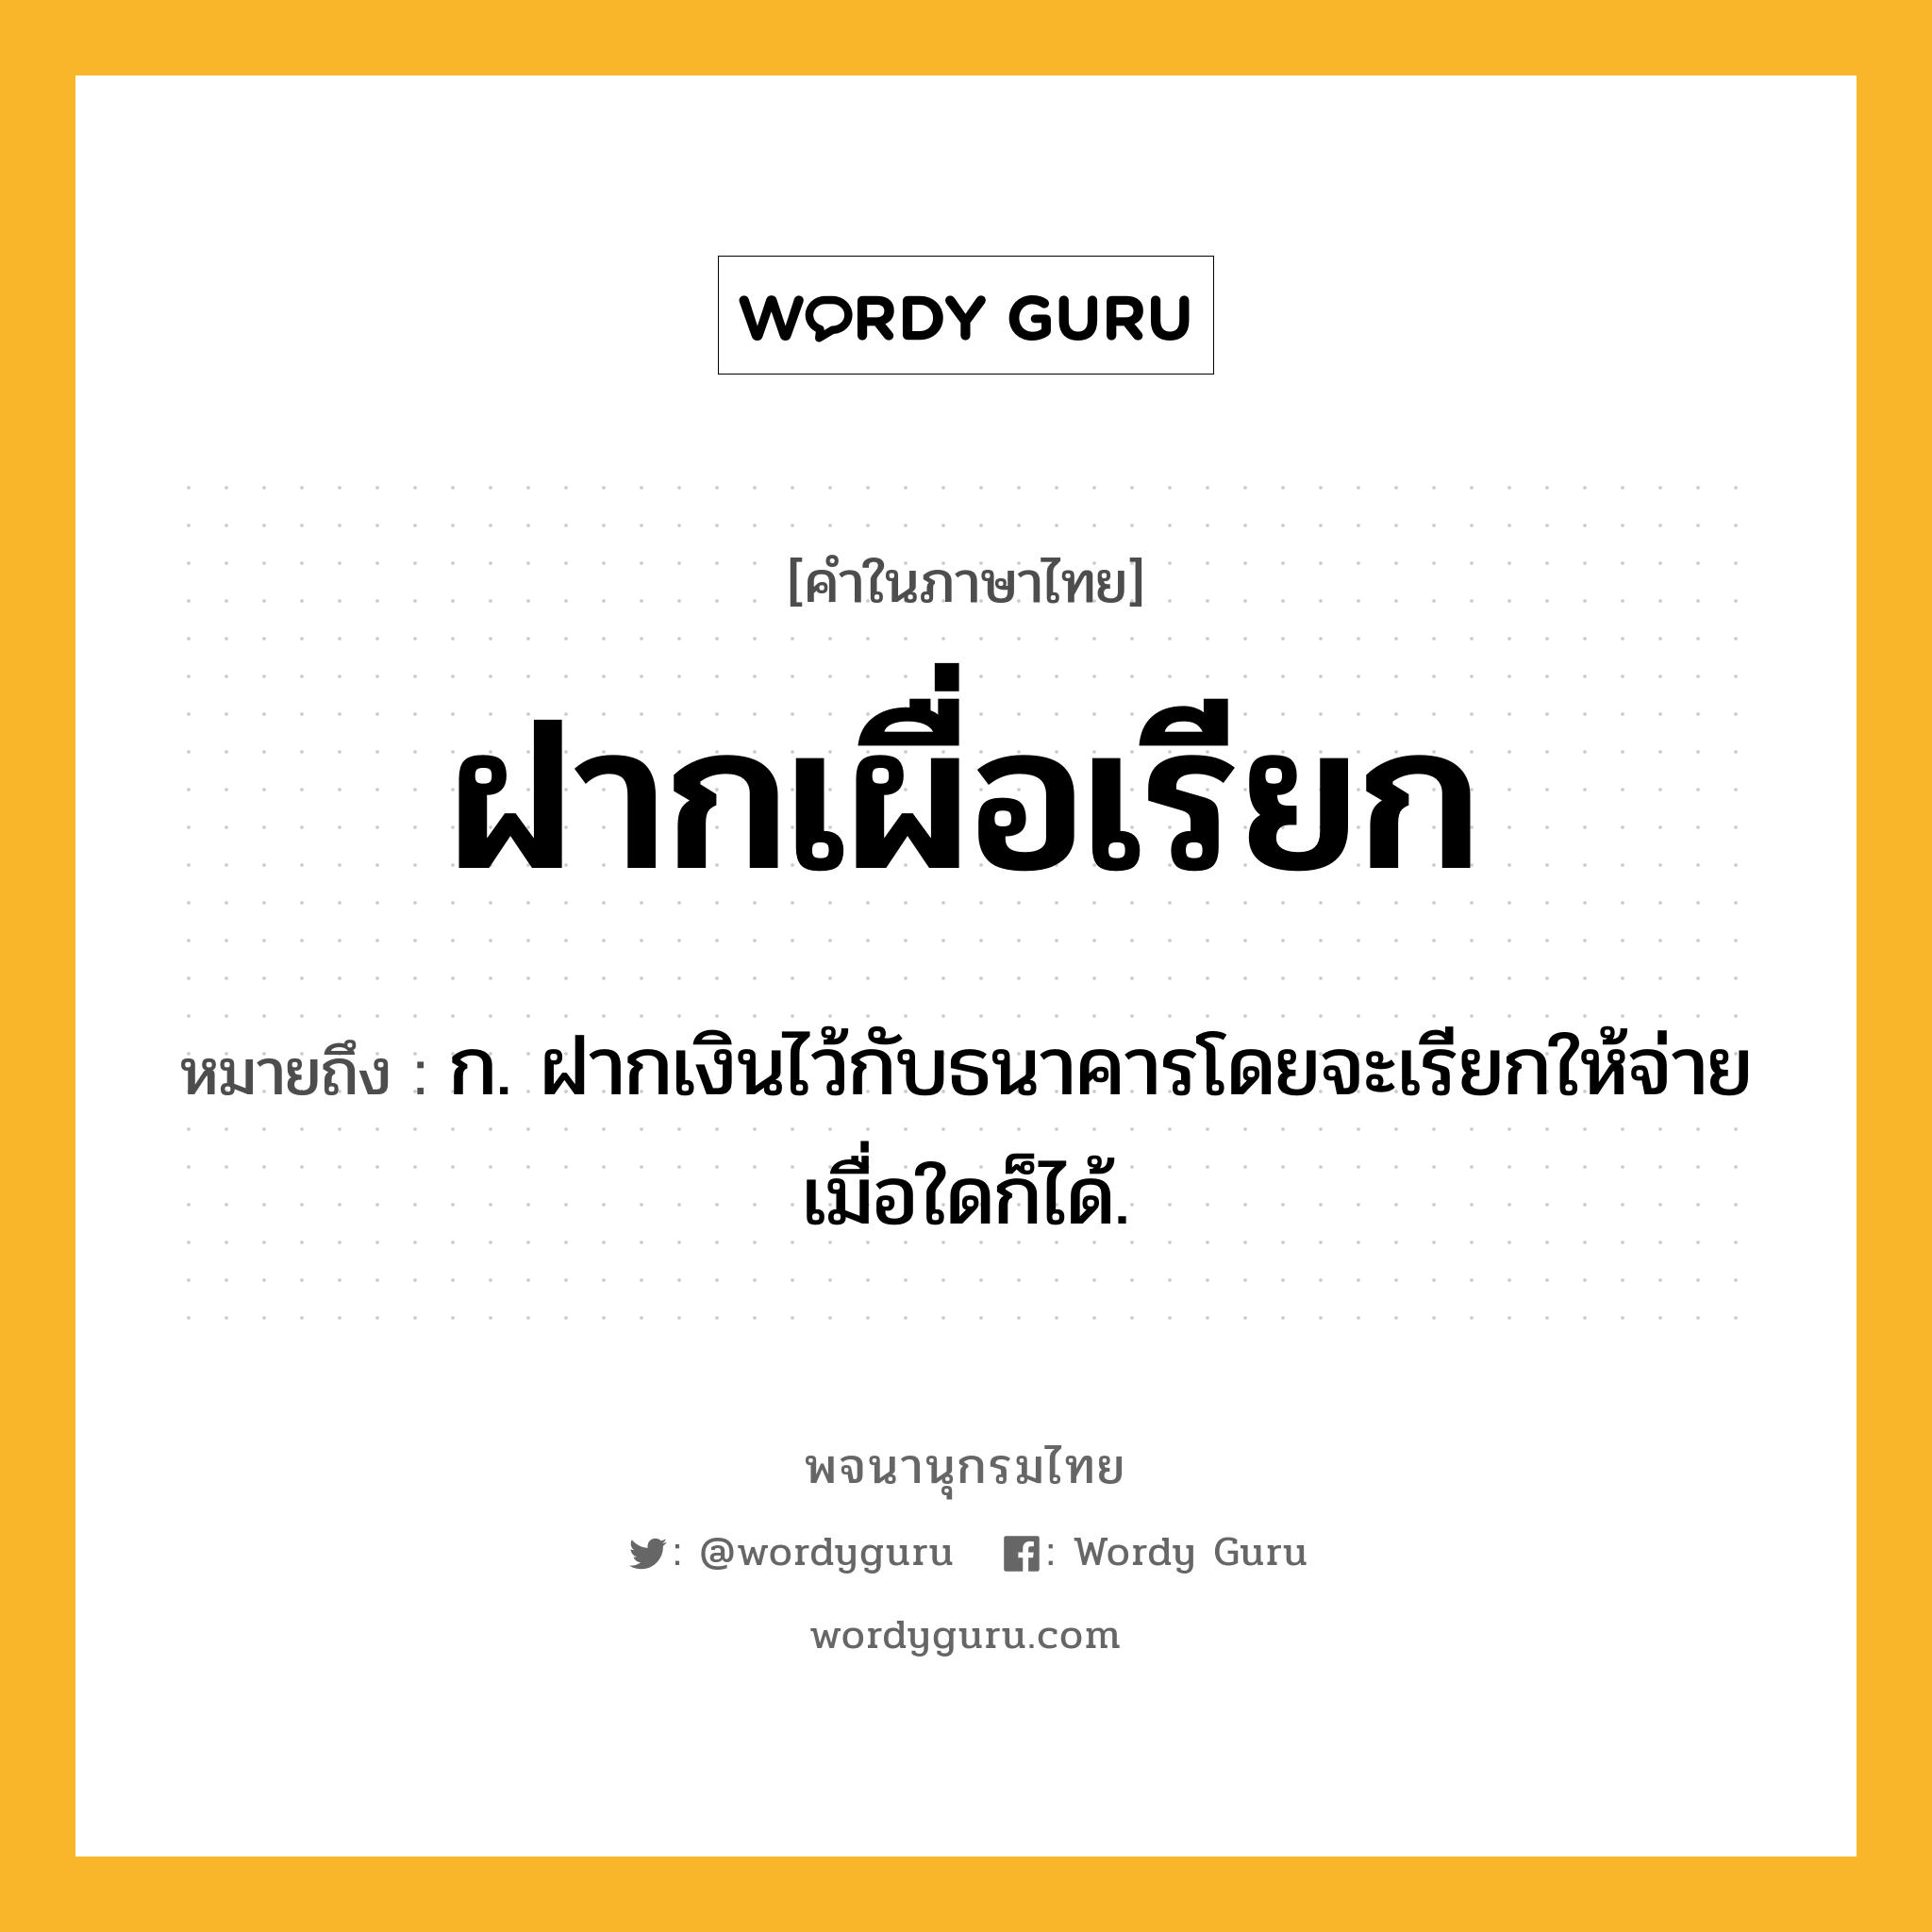 ฝากเผื่อเรียก ความหมาย หมายถึงอะไร?, คำในภาษาไทย ฝากเผื่อเรียก หมายถึง ก. ฝากเงินไว้กับธนาคารโดยจะเรียกให้จ่ายเมื่อใดก็ได้.